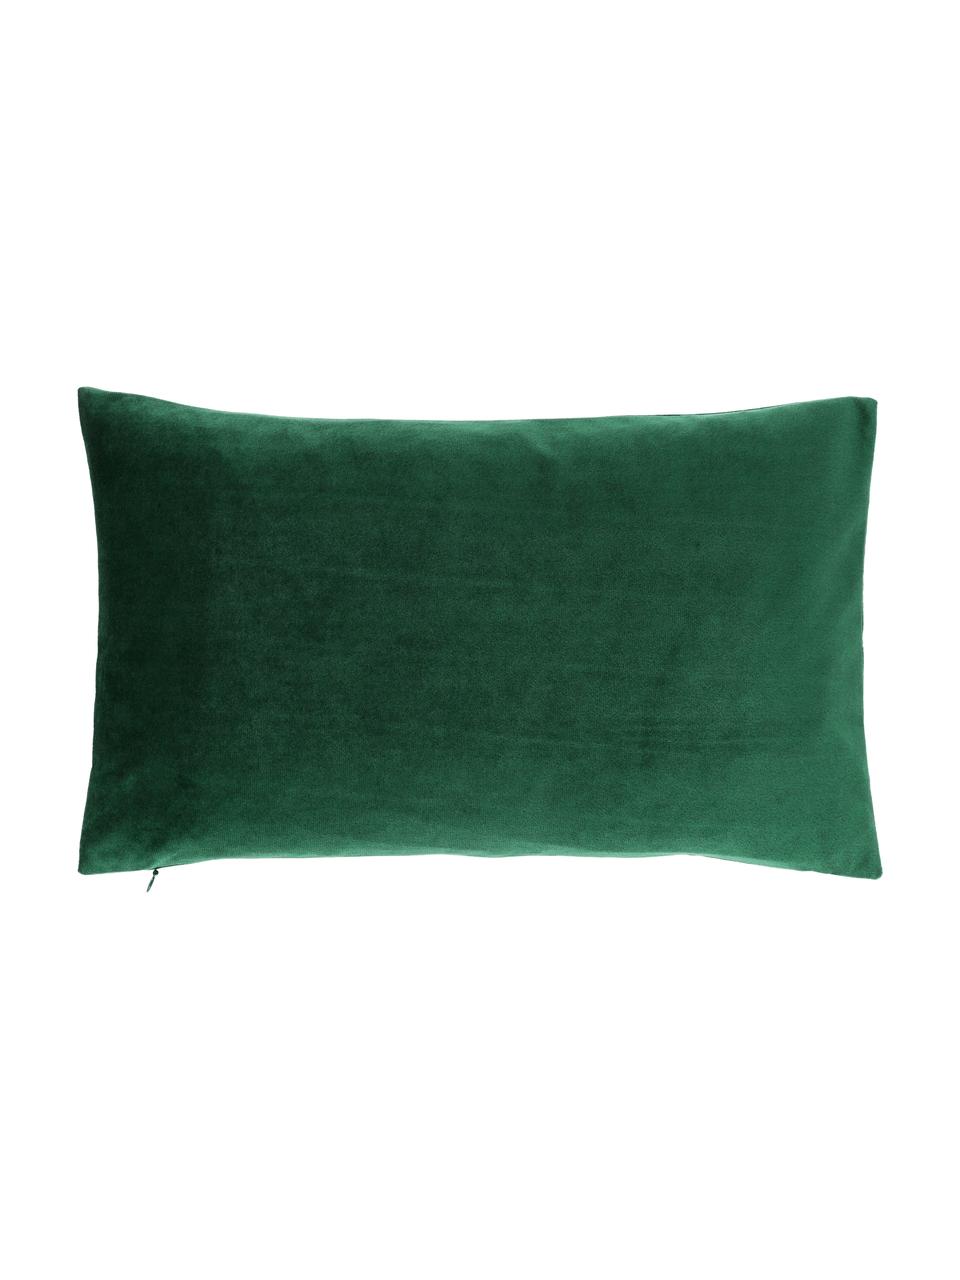 Fluwelen kussenhoes Lola in donkergroen met structuurpatroon, Fluweel (100% polyester), Groen, 30 x 50 cm